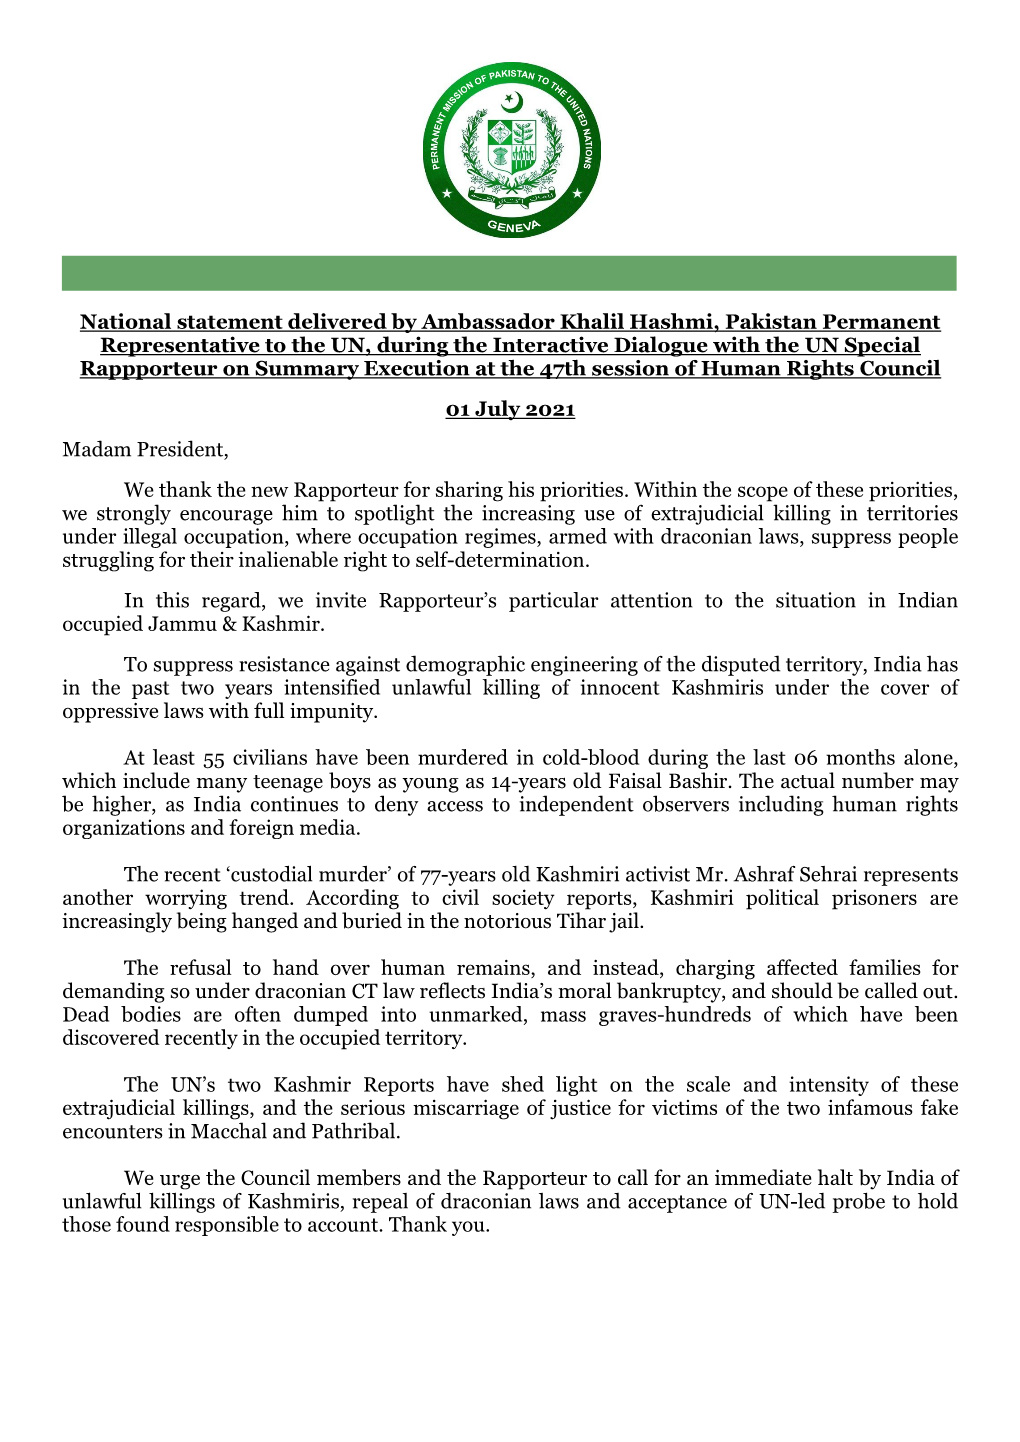 National Statement Delivered by Ambassador Khalil Hashmi